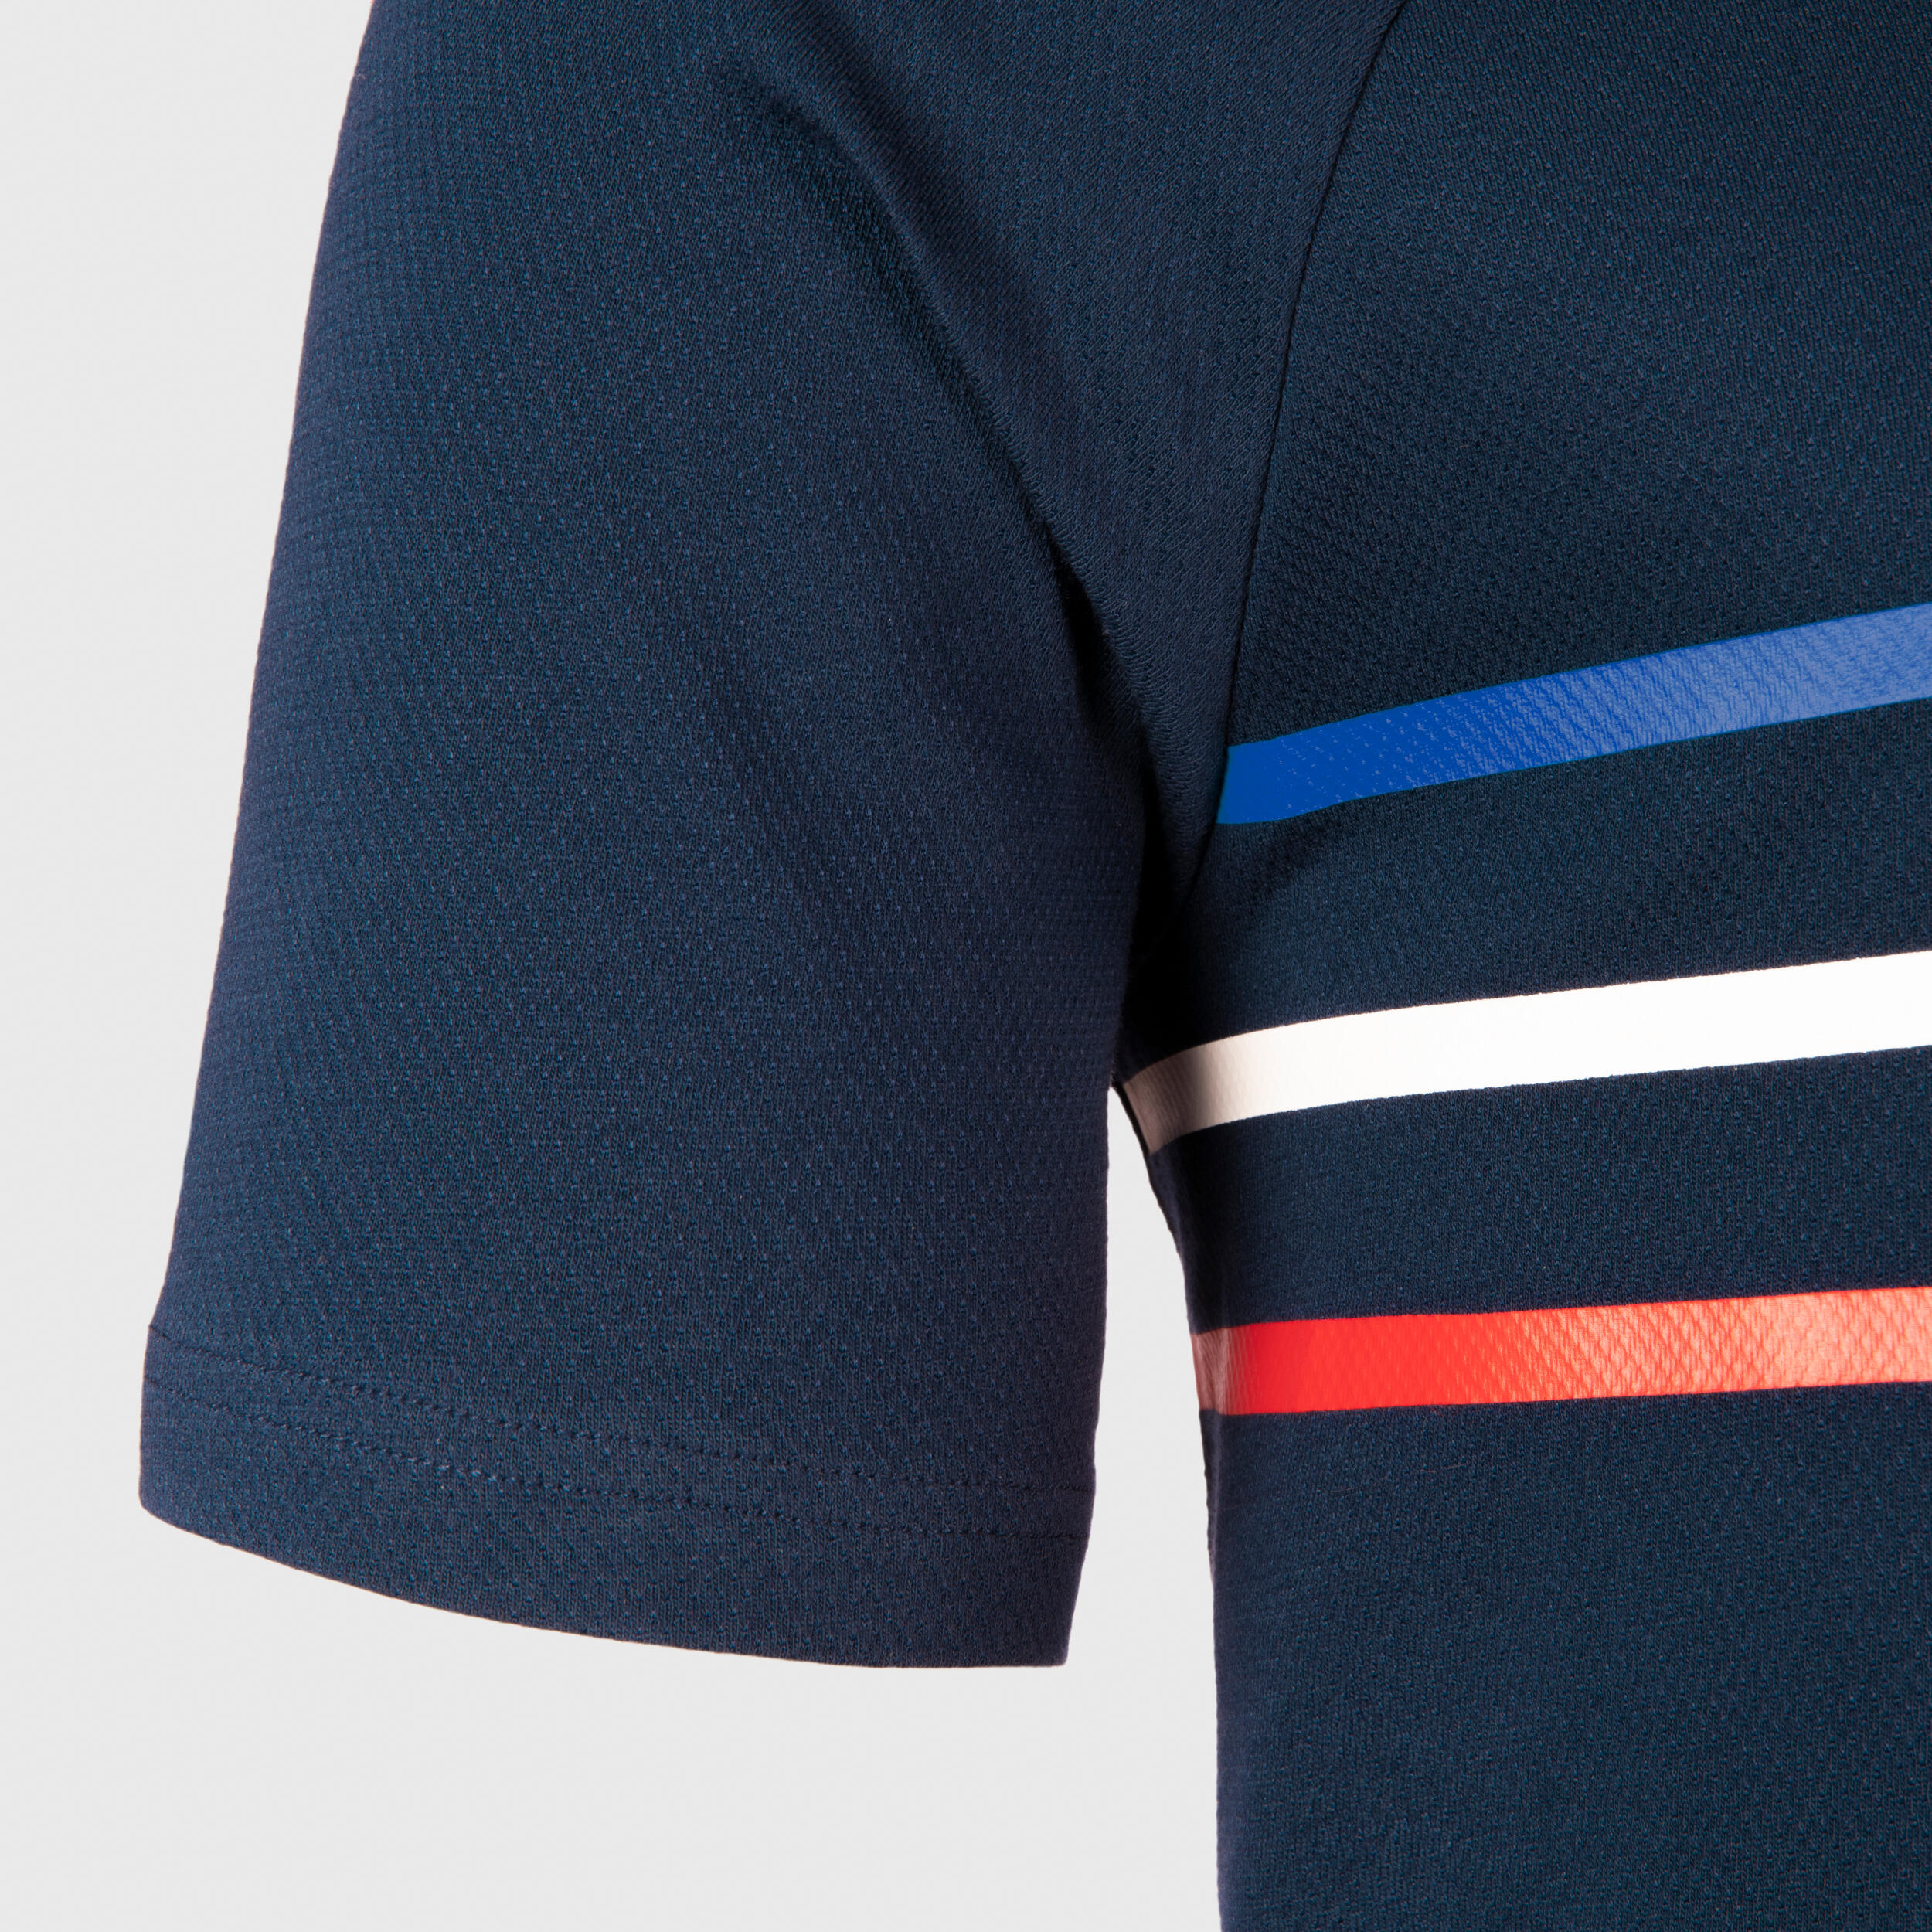 Men's/Women's Short-Sleeved T-Shirt R100 - France/Blue 4/7